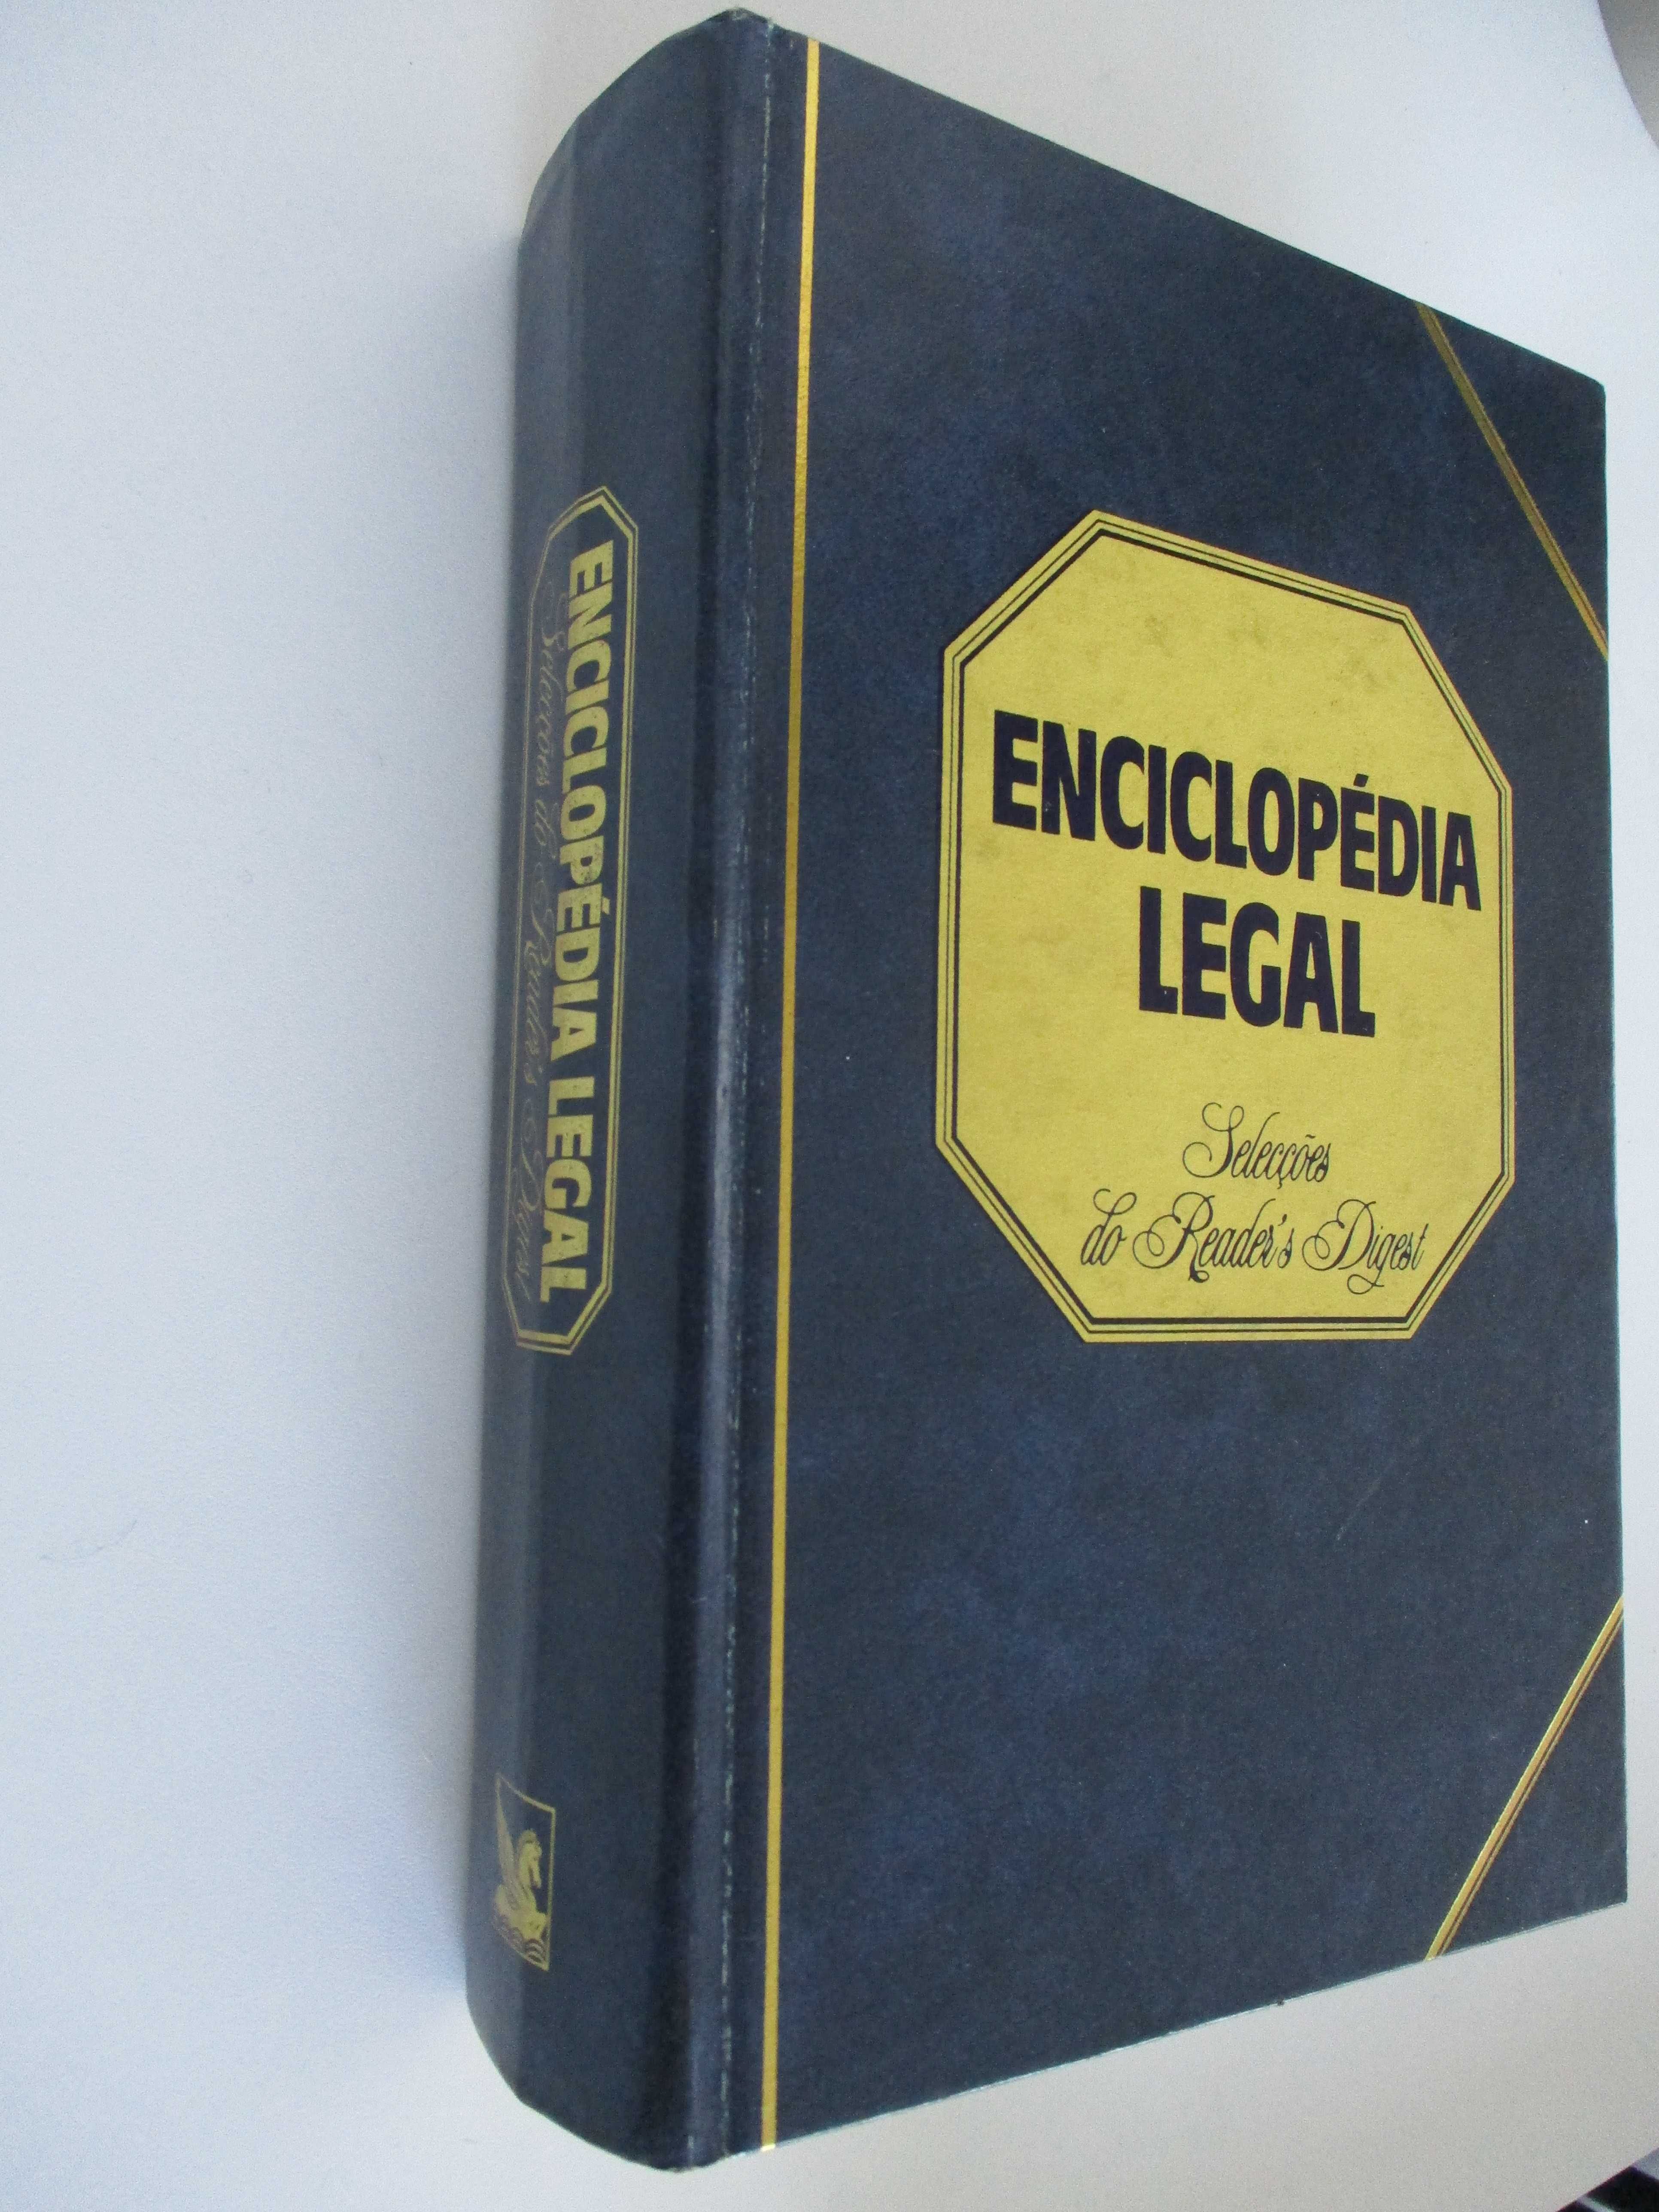 ENCICLOPÉDIA LEGAL editada pela Selecções Reader's Digest, capa dura